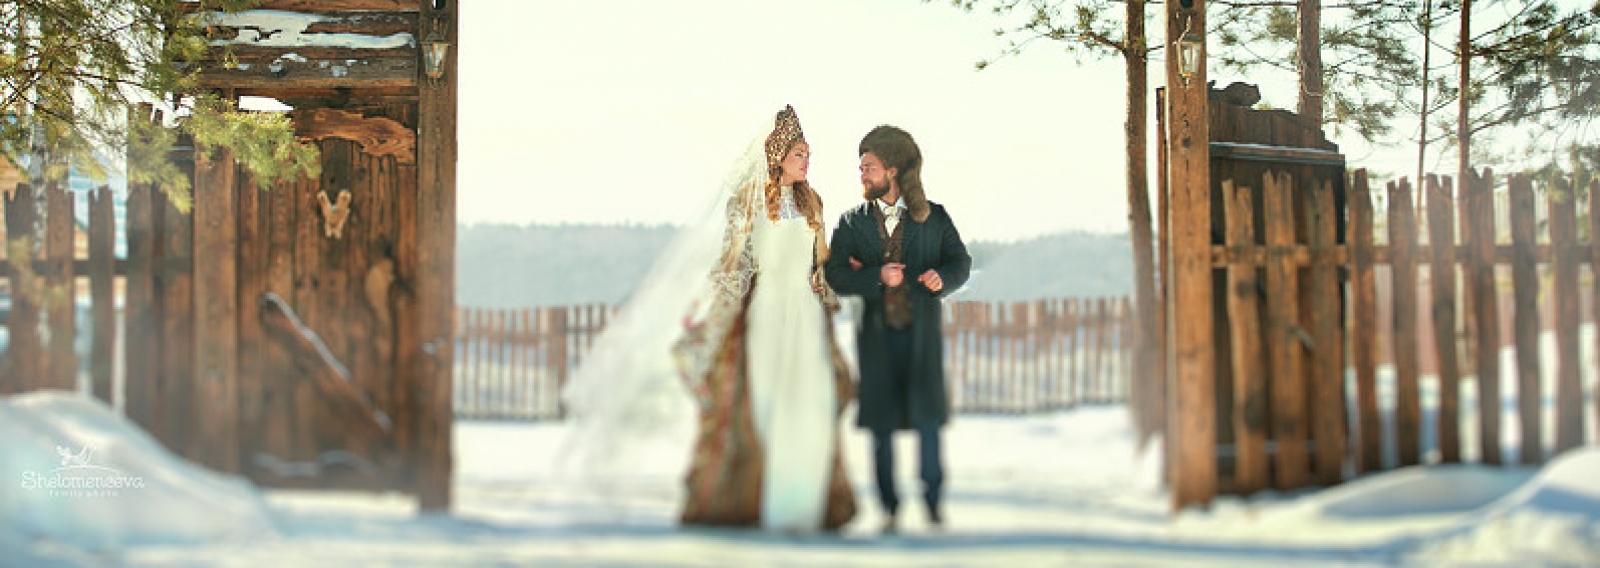 Непридуманная история о том, как Василиса Круглова замуж выходила. Глава V: Чужая свадьба